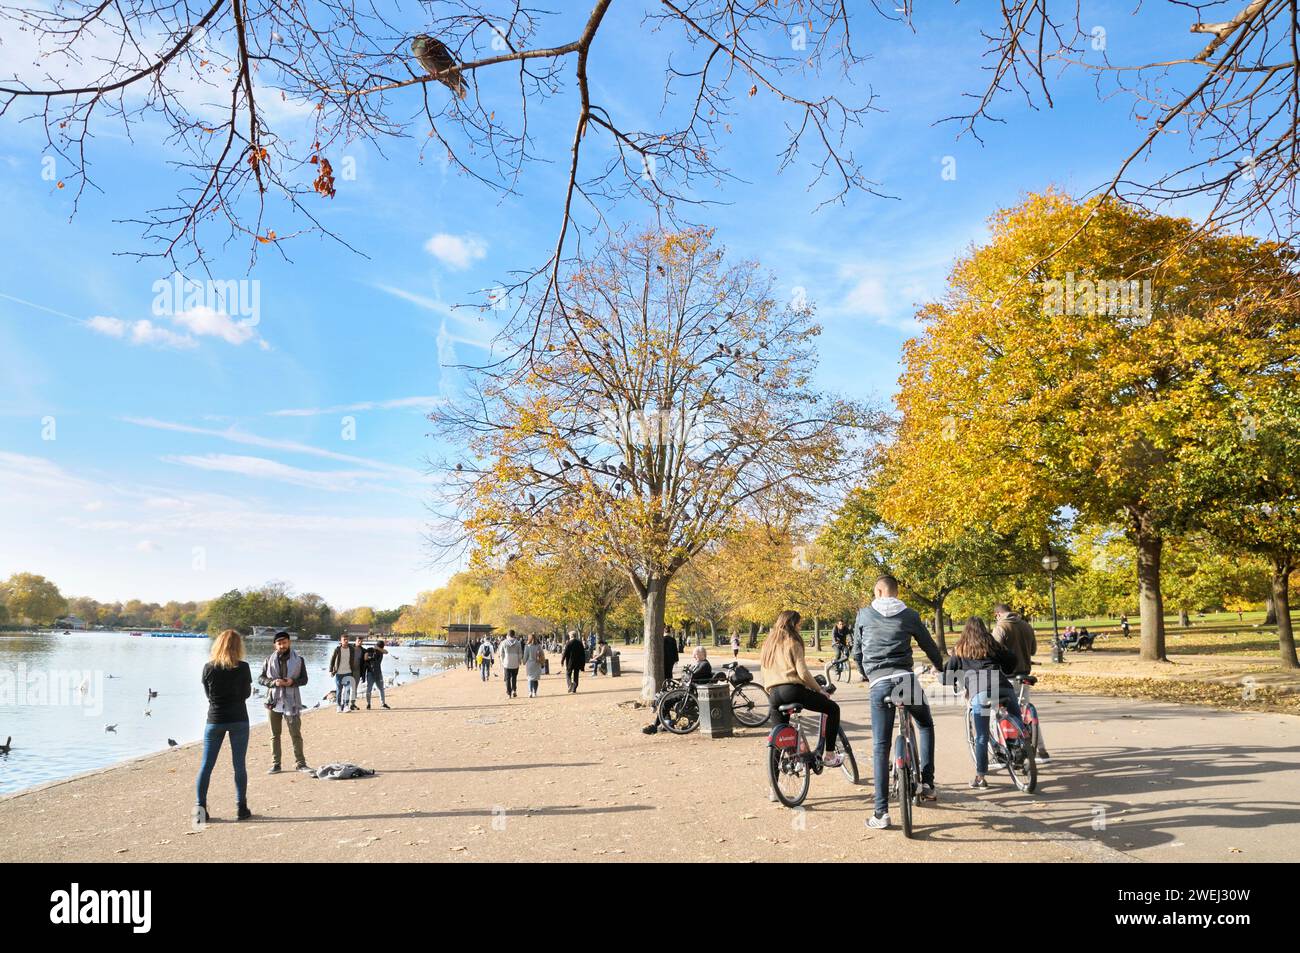 Menschen genießen die Herbstsonne auf dem Fahrrad und zu Fuß neben dem Serpentinsee mit Tauben, die in einem Baum ruhen. Hyde Park, London, Großbritannien. Wandern, Radfahren Stockfoto